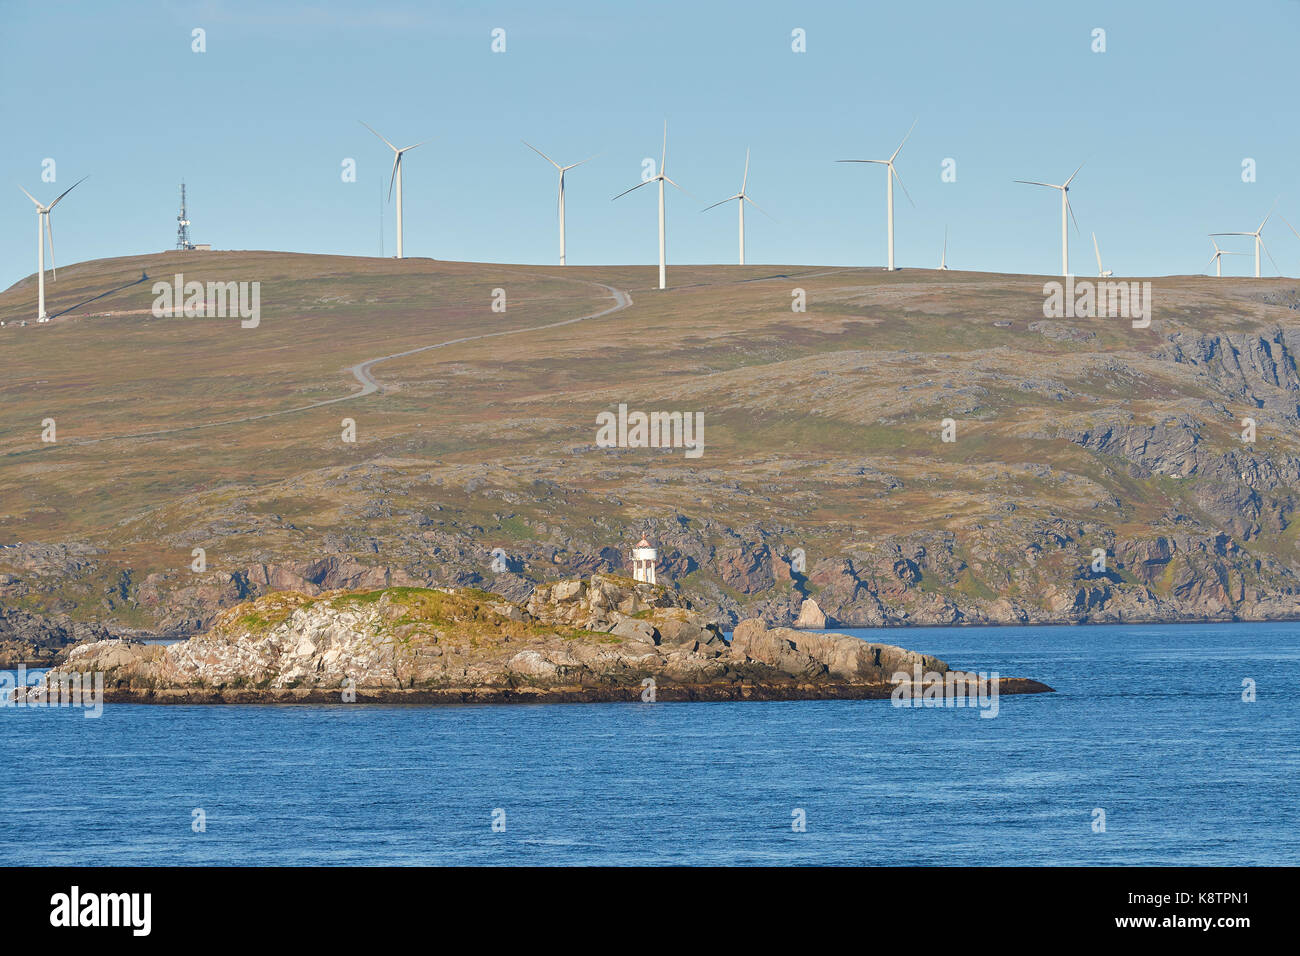 Le moulin de Norsk Hydro Park sur l'île de Havøya dans le cercle Arctique norvégien. Banque D'Images